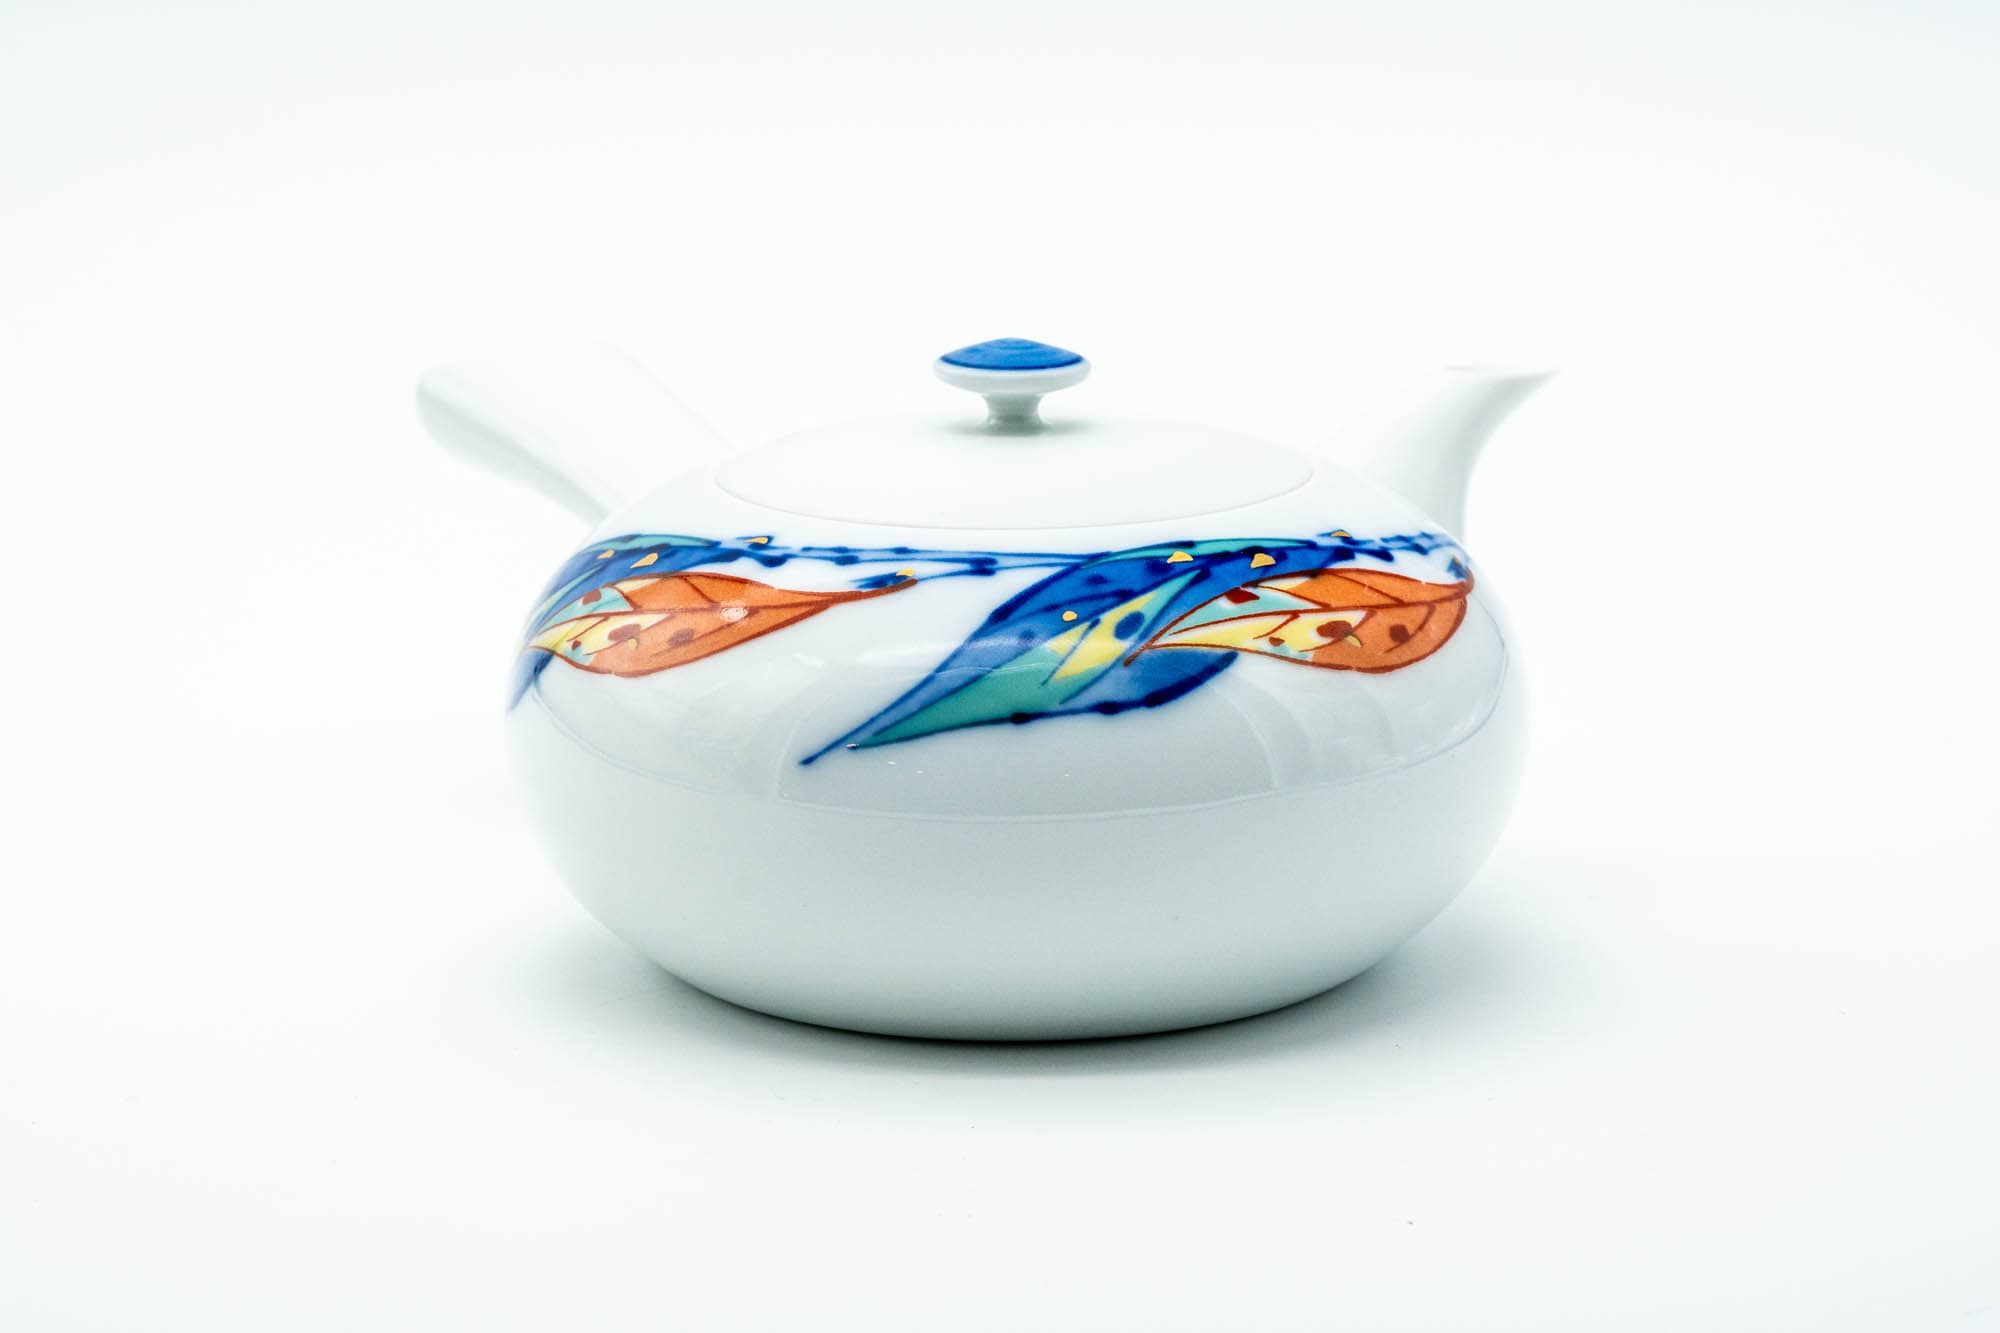 Japanese Kyusu - Blue Orange Leaves Arita-yaki Porcelain Teapot - 350ml